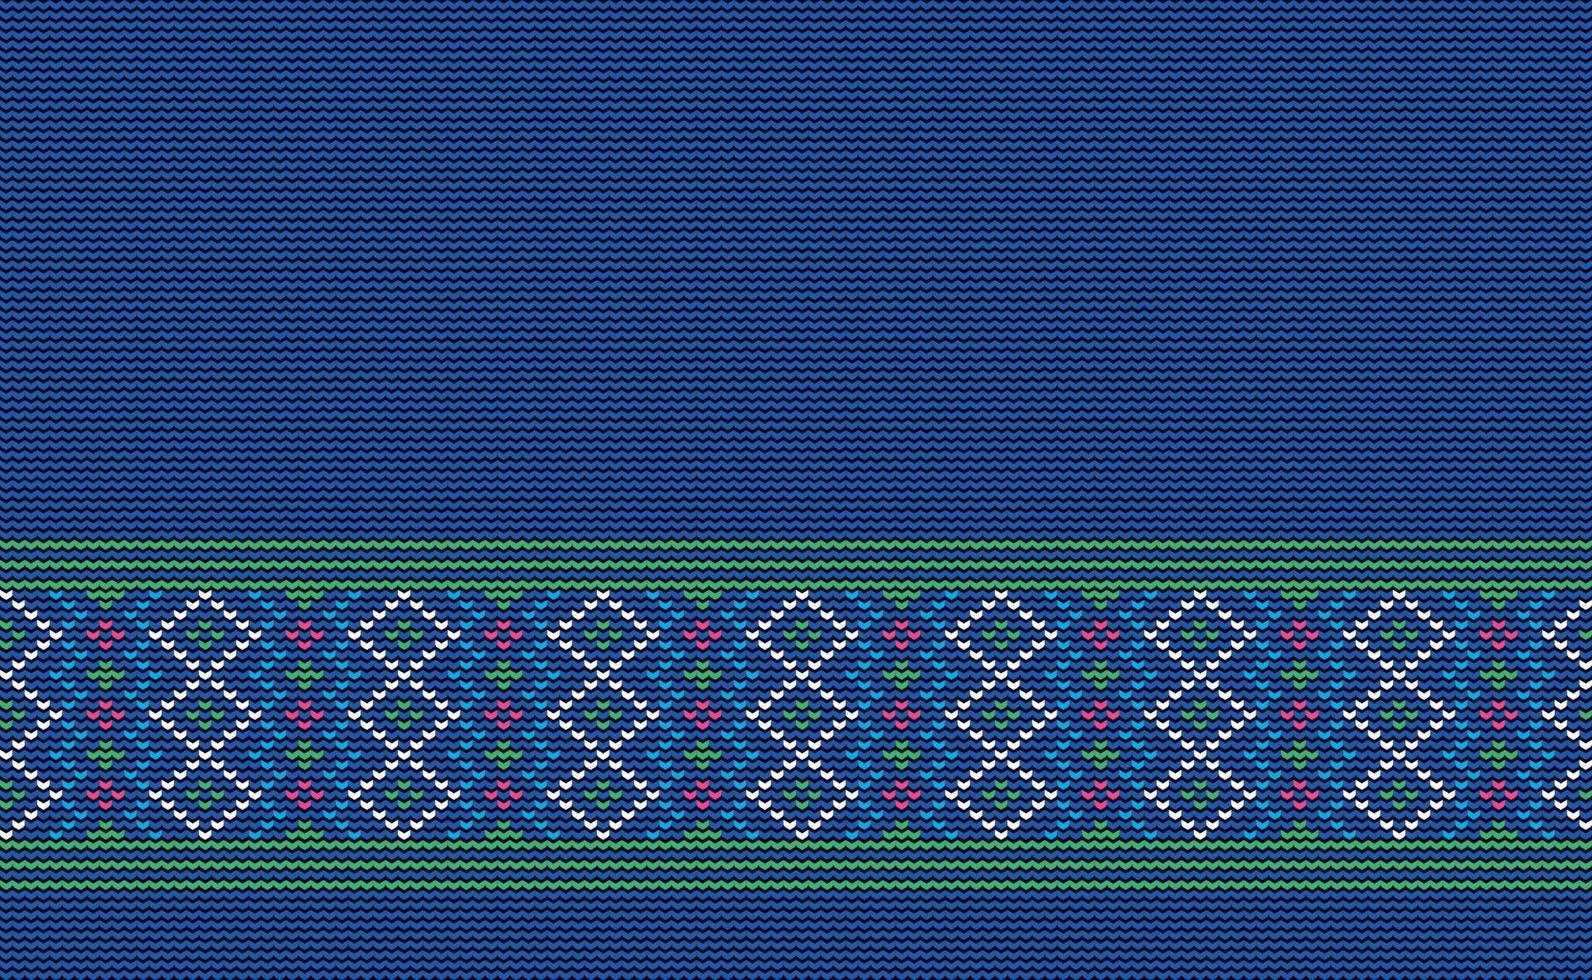 padrão étnico de ponto cruzado, fundo de malha navajo vetorial, estilo tribal de motivo bordado, linha ornamentada padrão azul e verde, design para têxteis, tecido, cortina, ilustração gráfica vetor